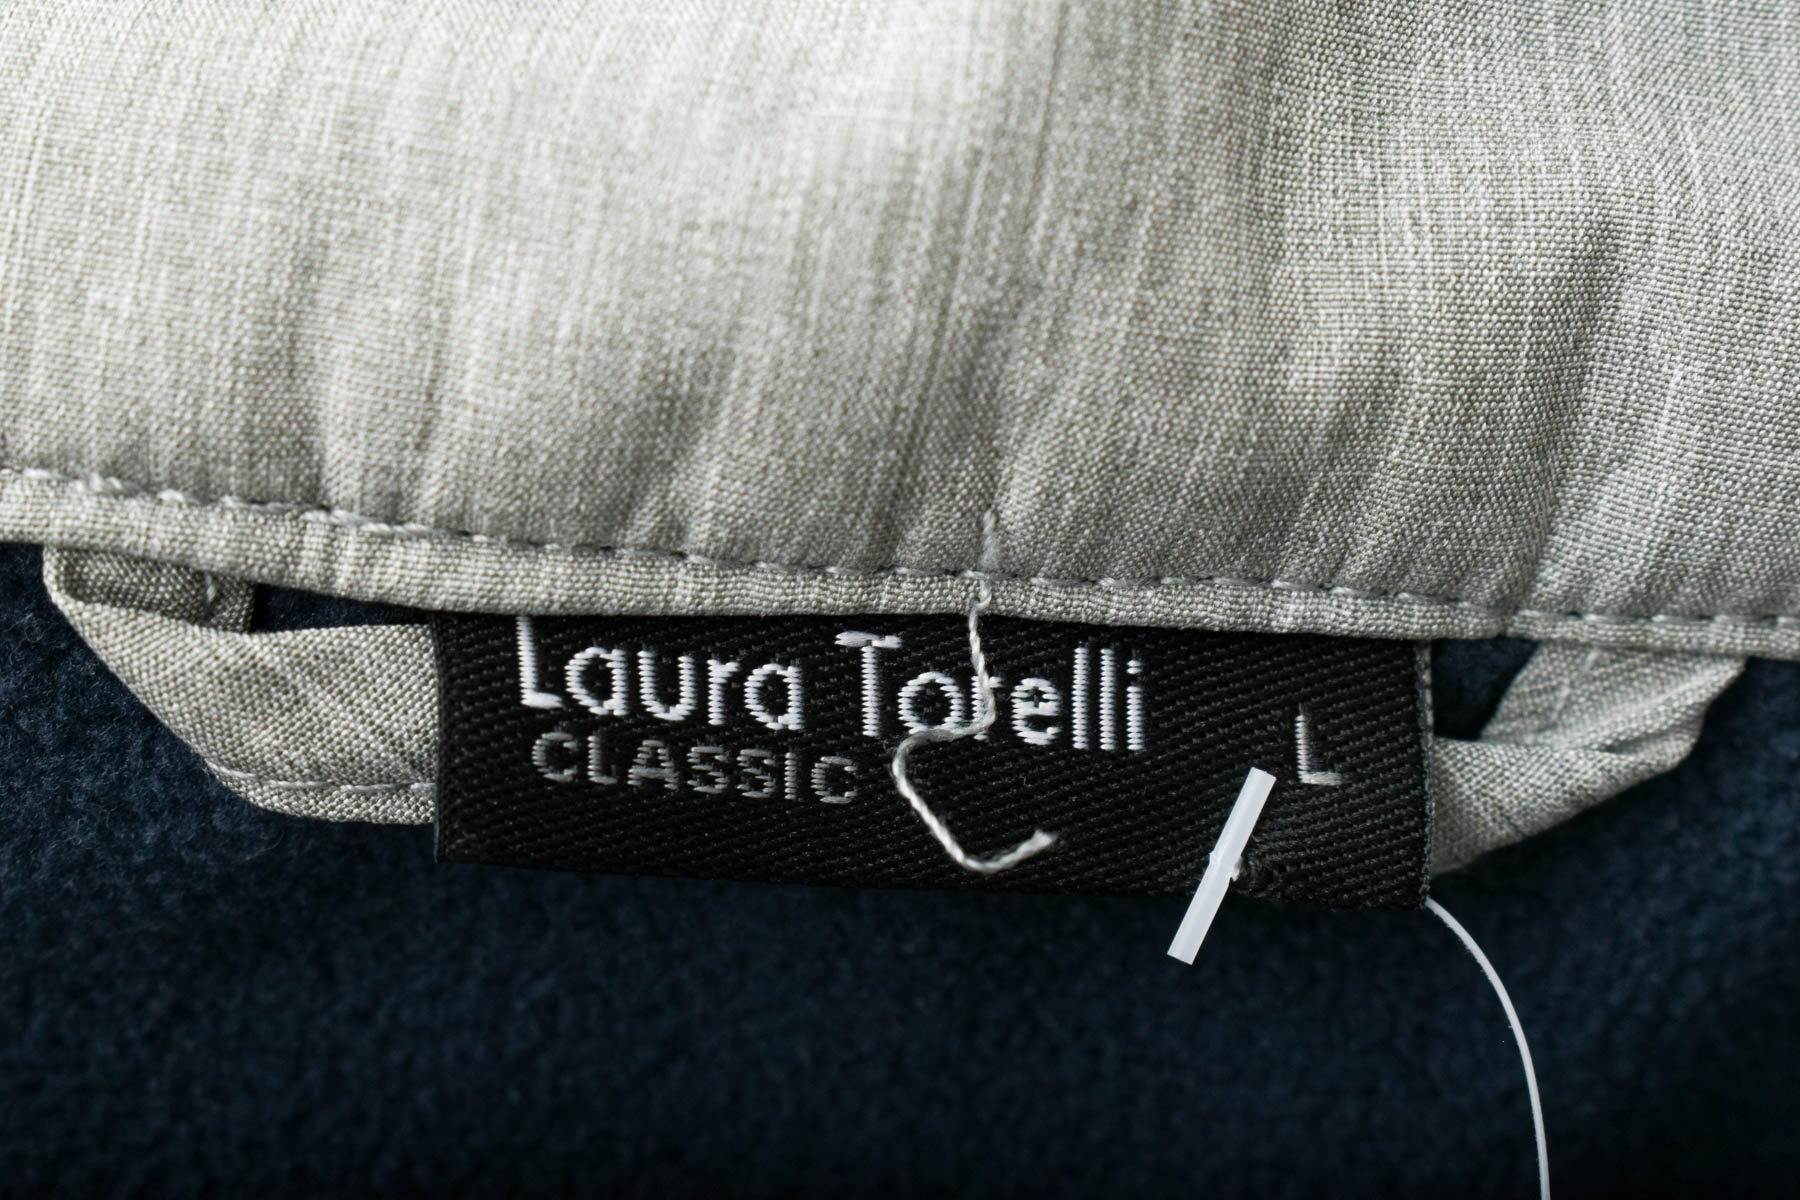 Women's vest - Laura Torelli - 2